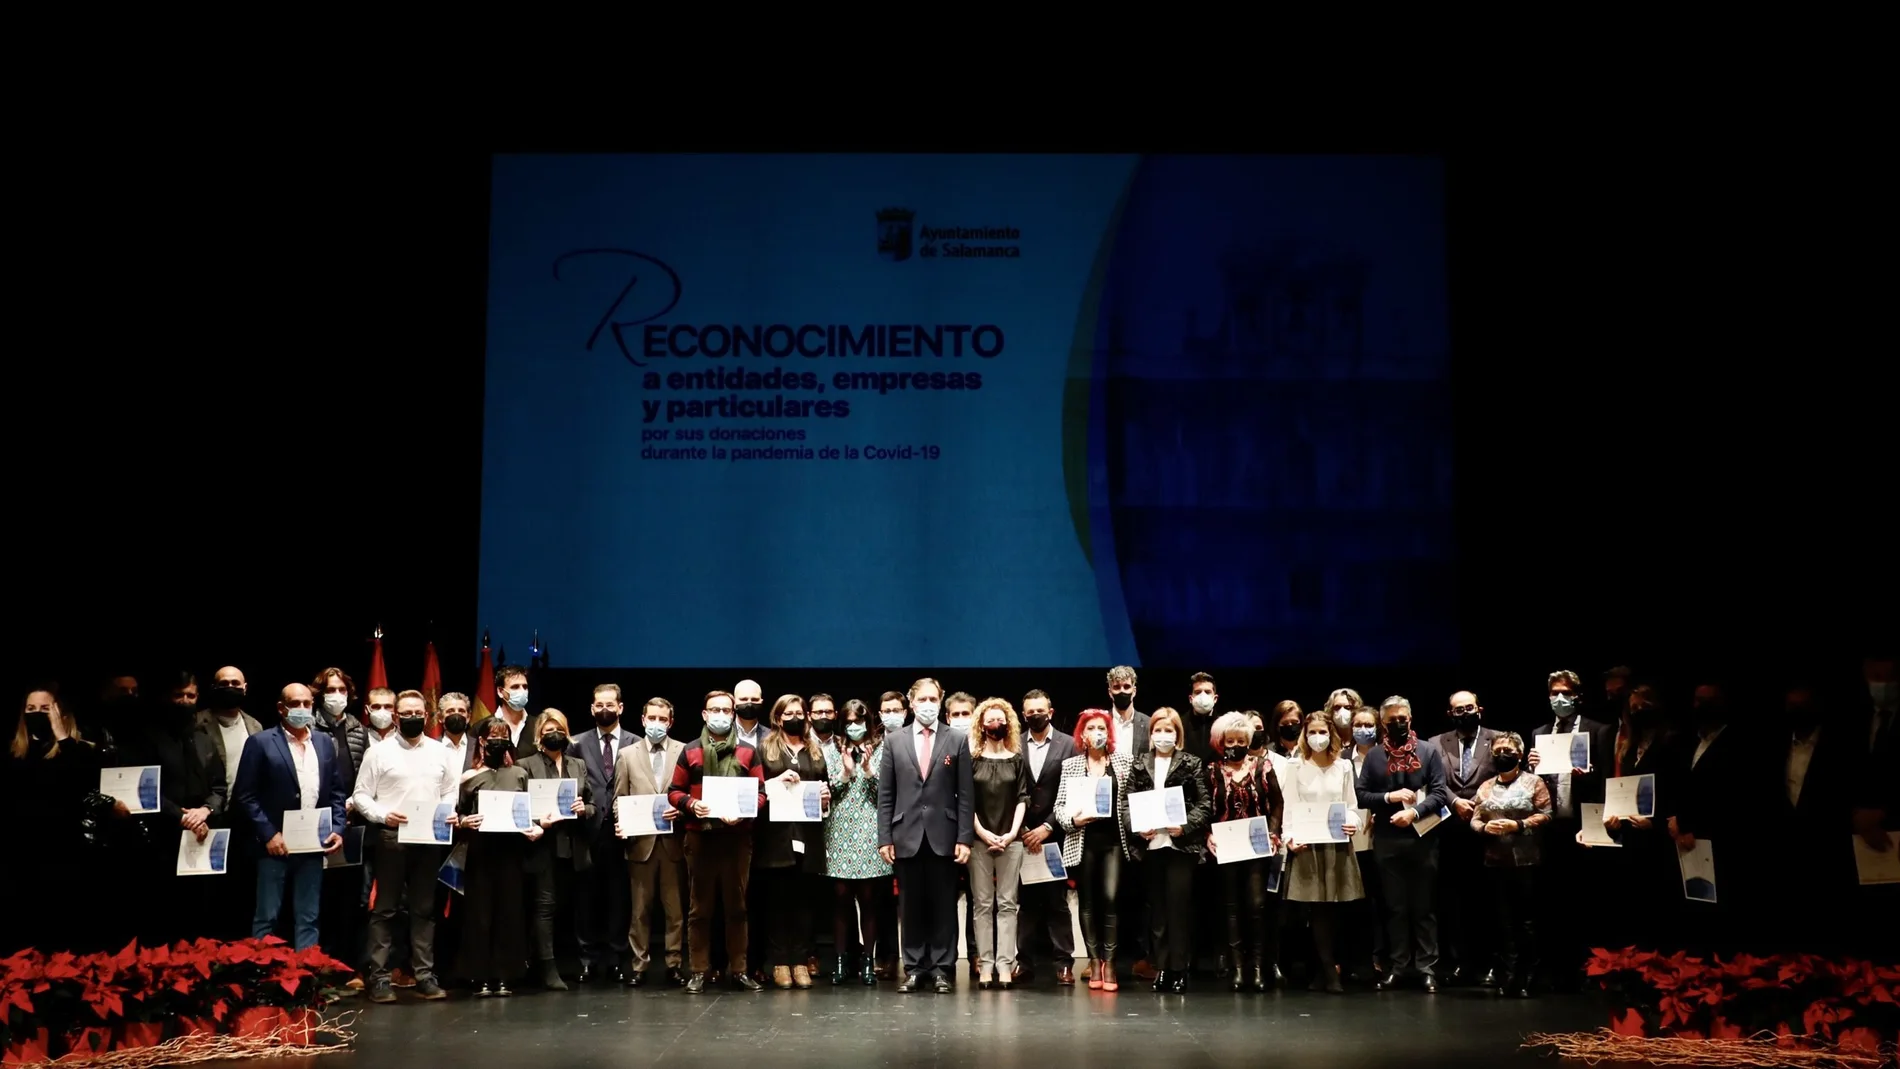 El alcalde de Salamanca, Carlos Garcíaa Carbayo, asiste al acto homenaje que realiza el Ayuntamiento a las empresas que han colaborado altruistamente con el Consistorio en la lucha contra el COVID-19.